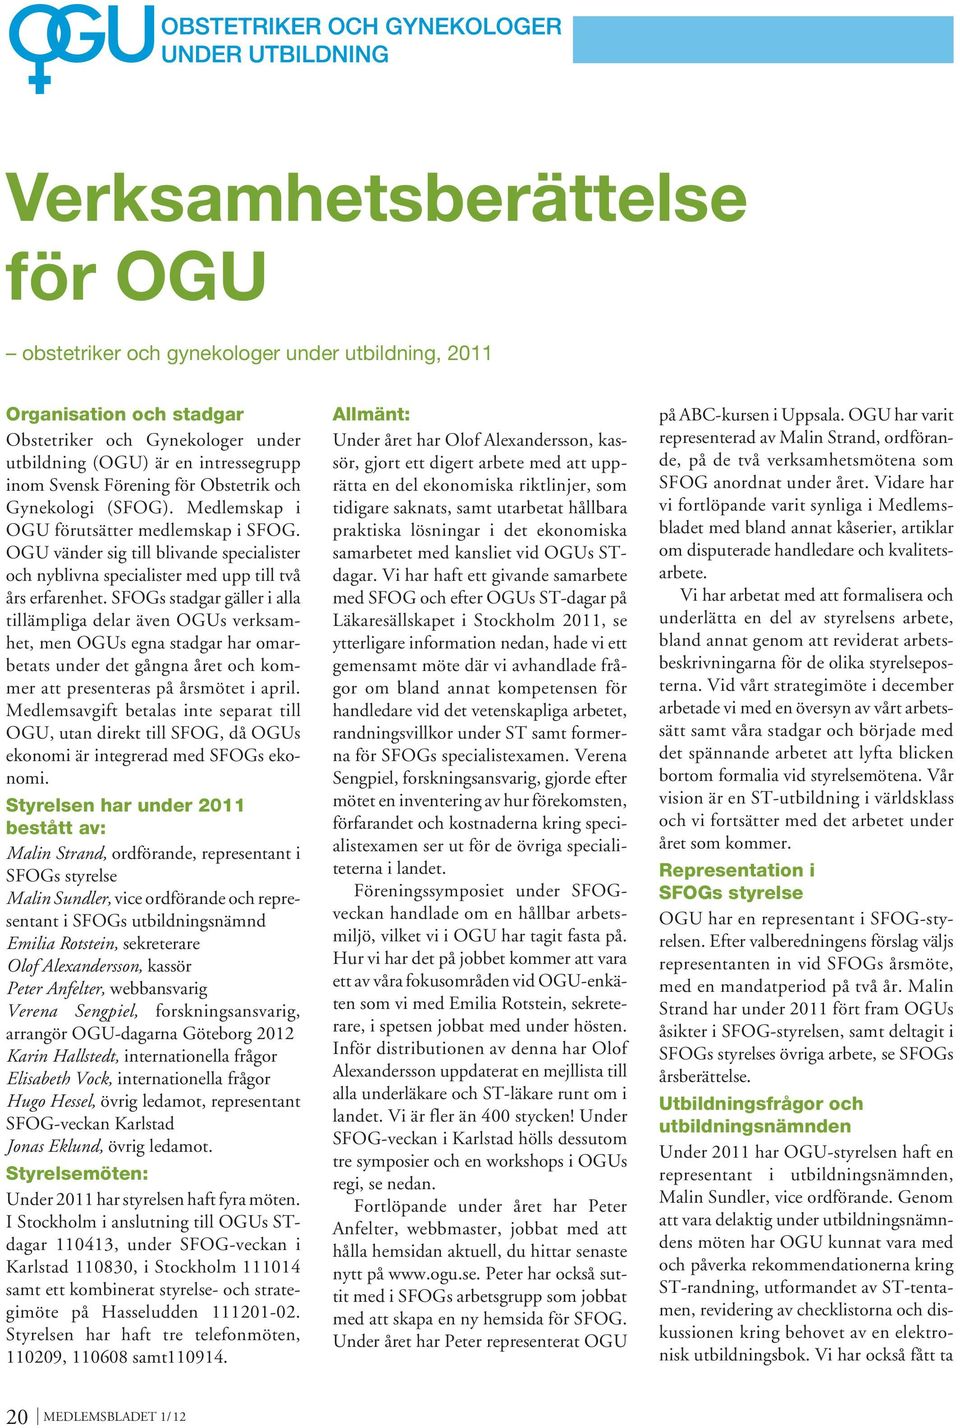 SFOGs stadgar gäller i alla tillämpliga delar även OGUs verksamhet, men OGUs egna stadgar har omarbetats under det gångna året och kommer att presenteras på årsmötet i april.